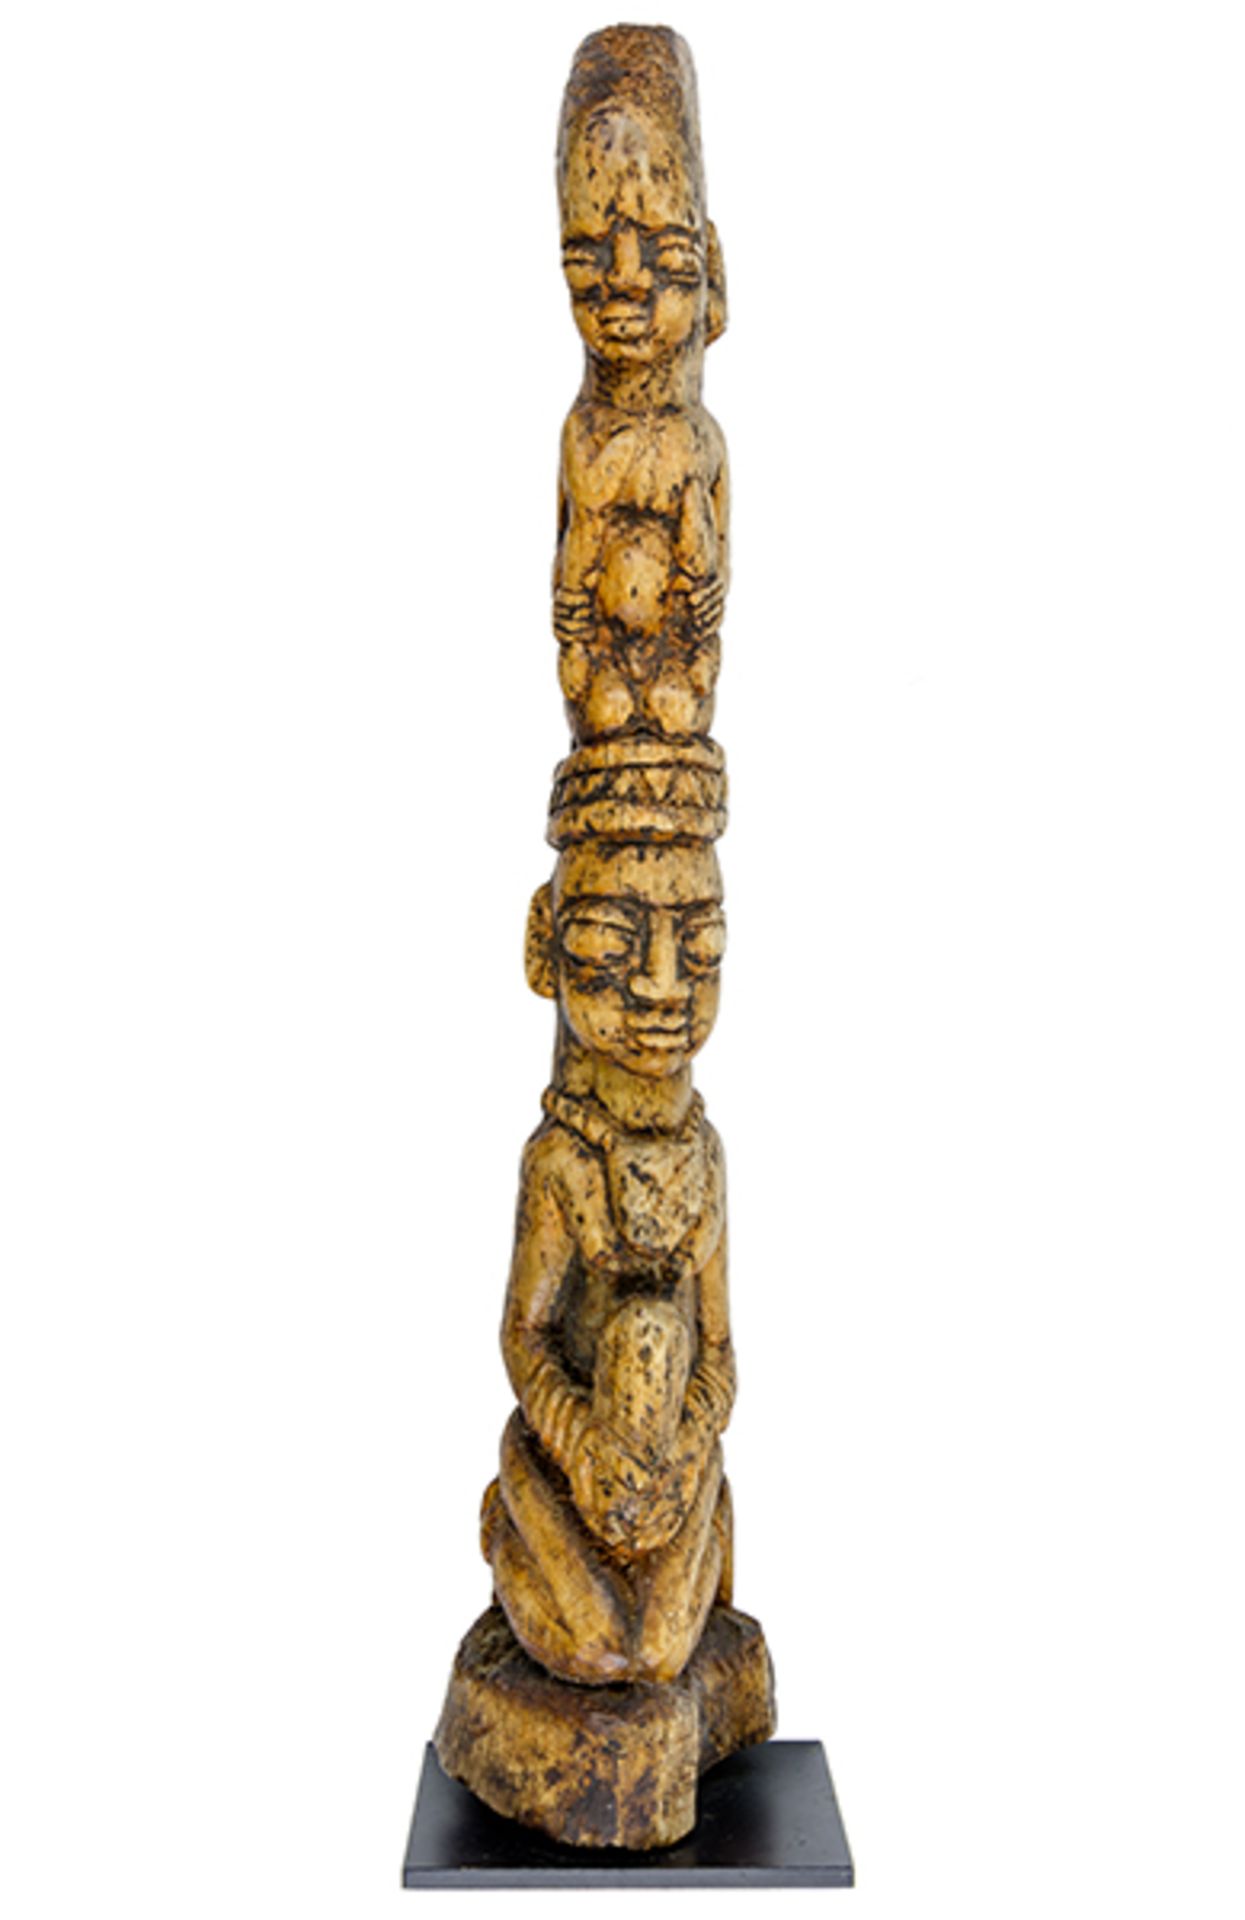 Afrikana - - Königspaar, Yoruba, Nigeria. Knochen auf Metallplatte montiert. Größe: 54 x 11 x 11